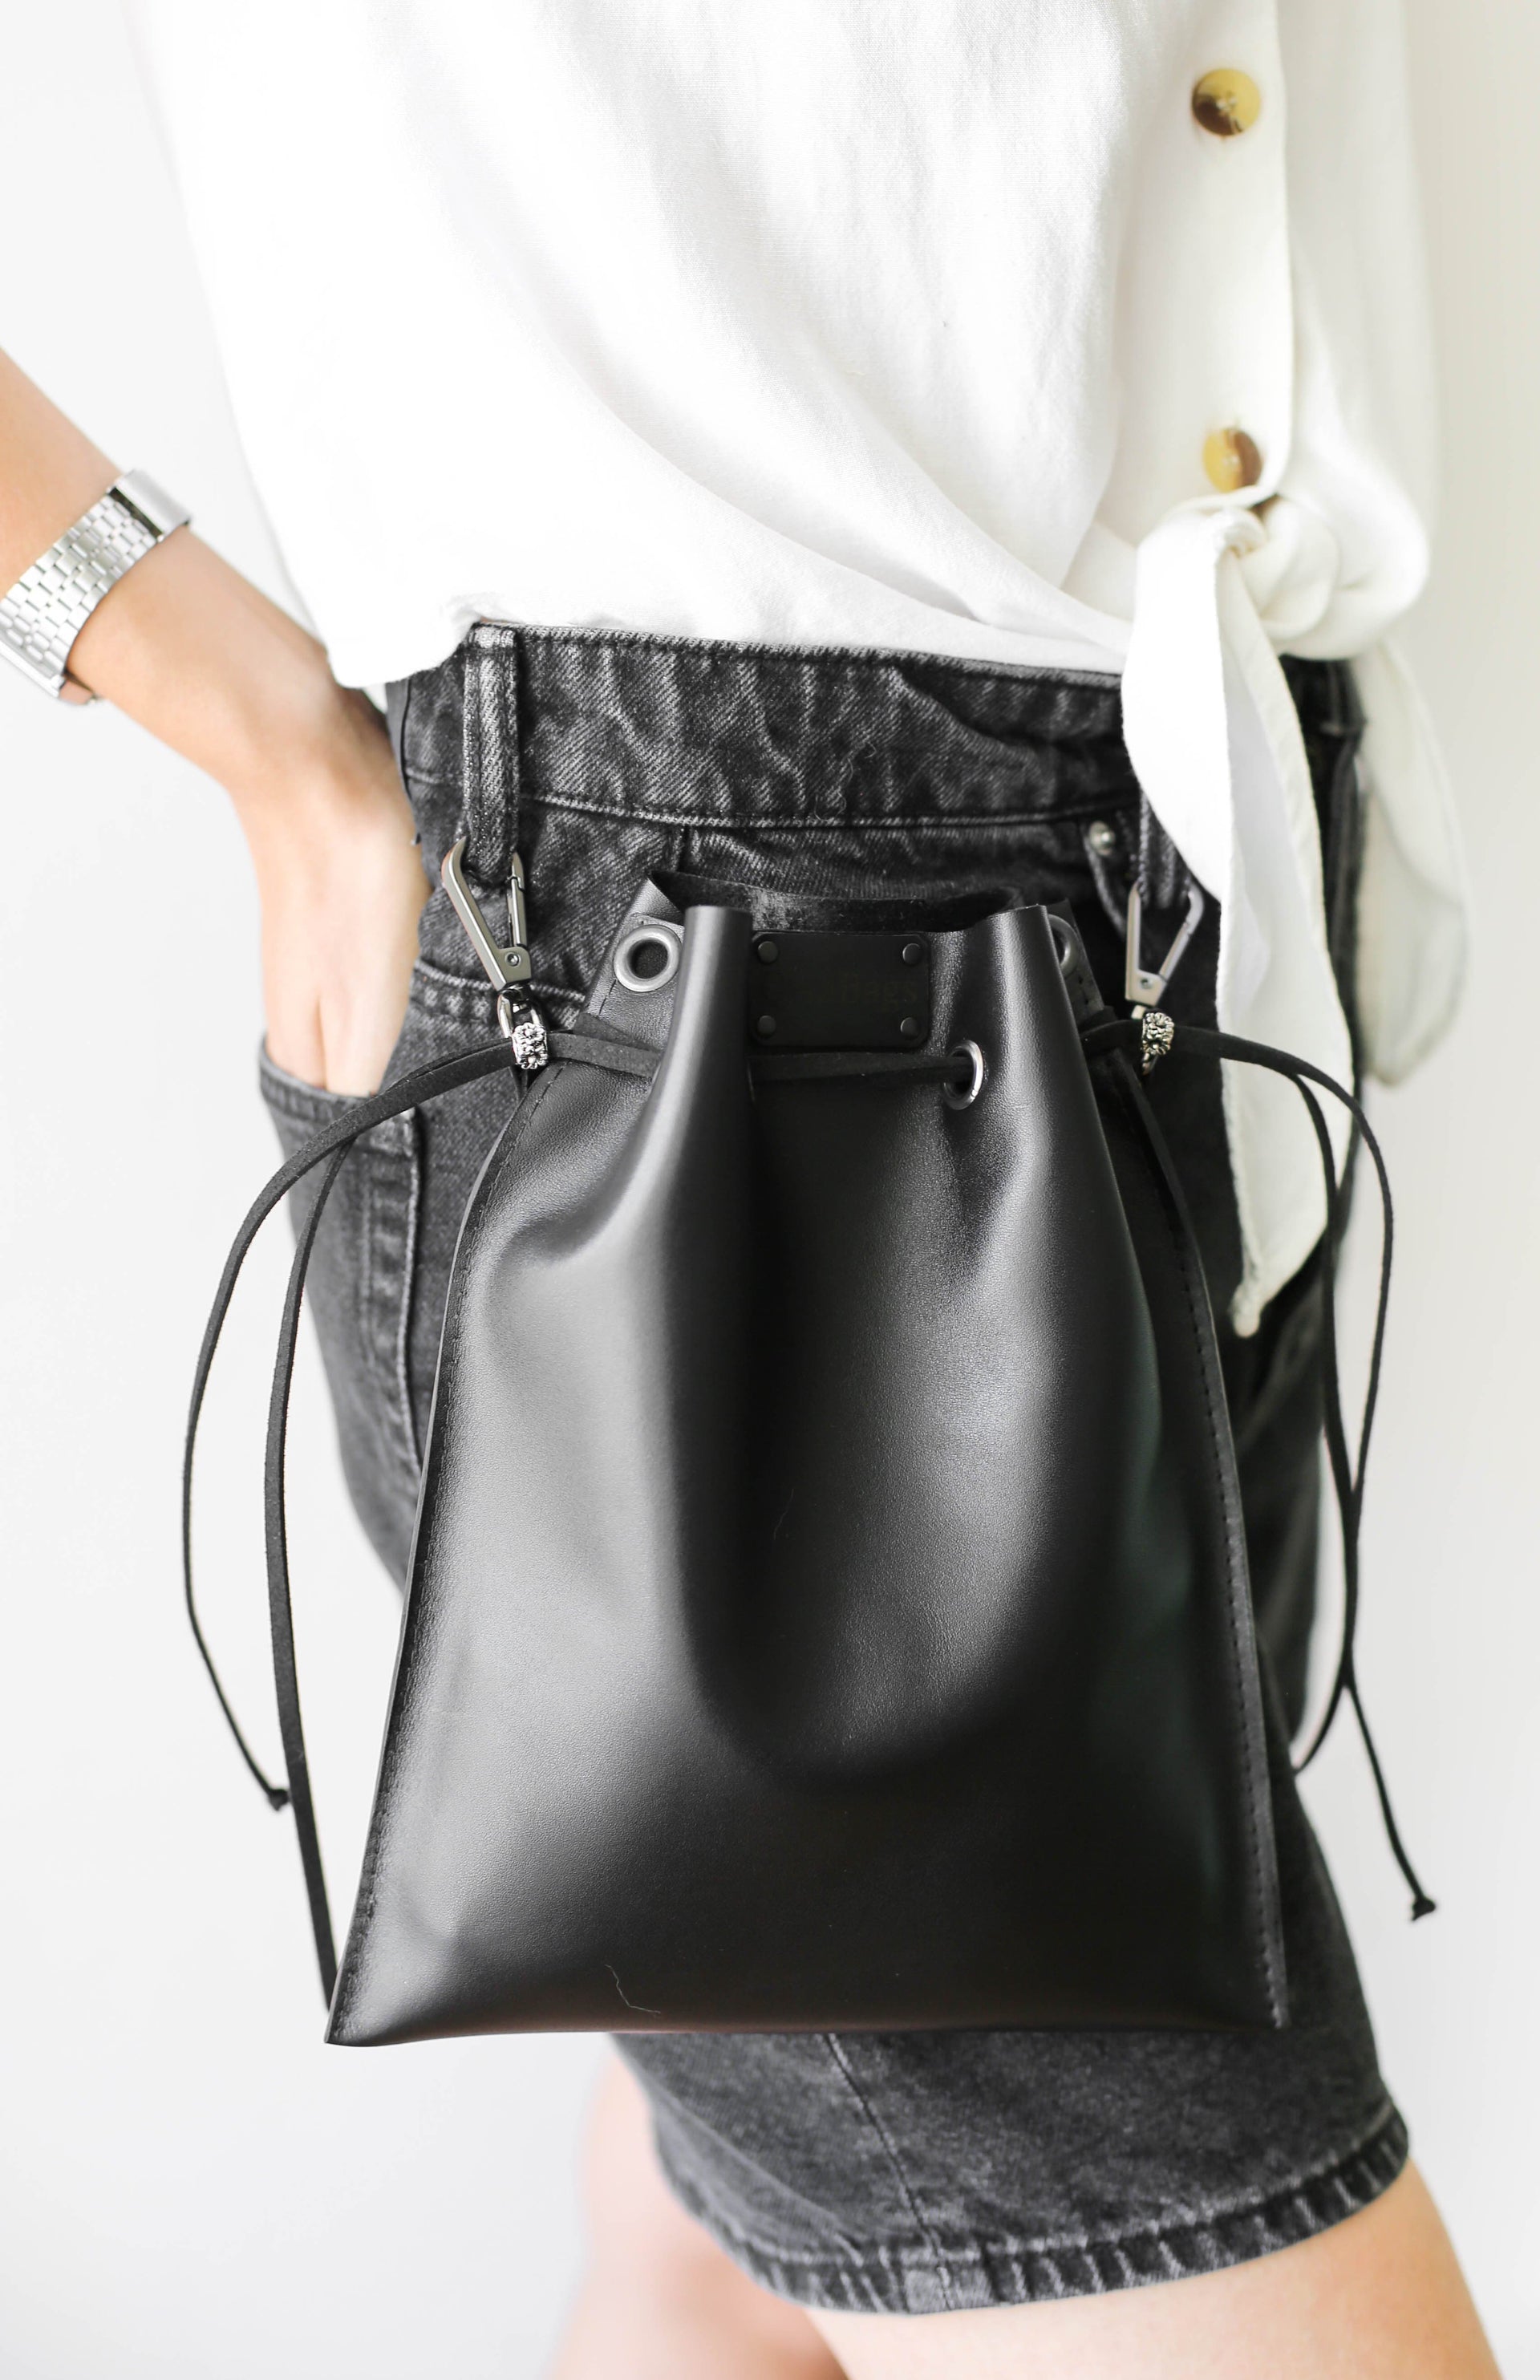 leather black purse 